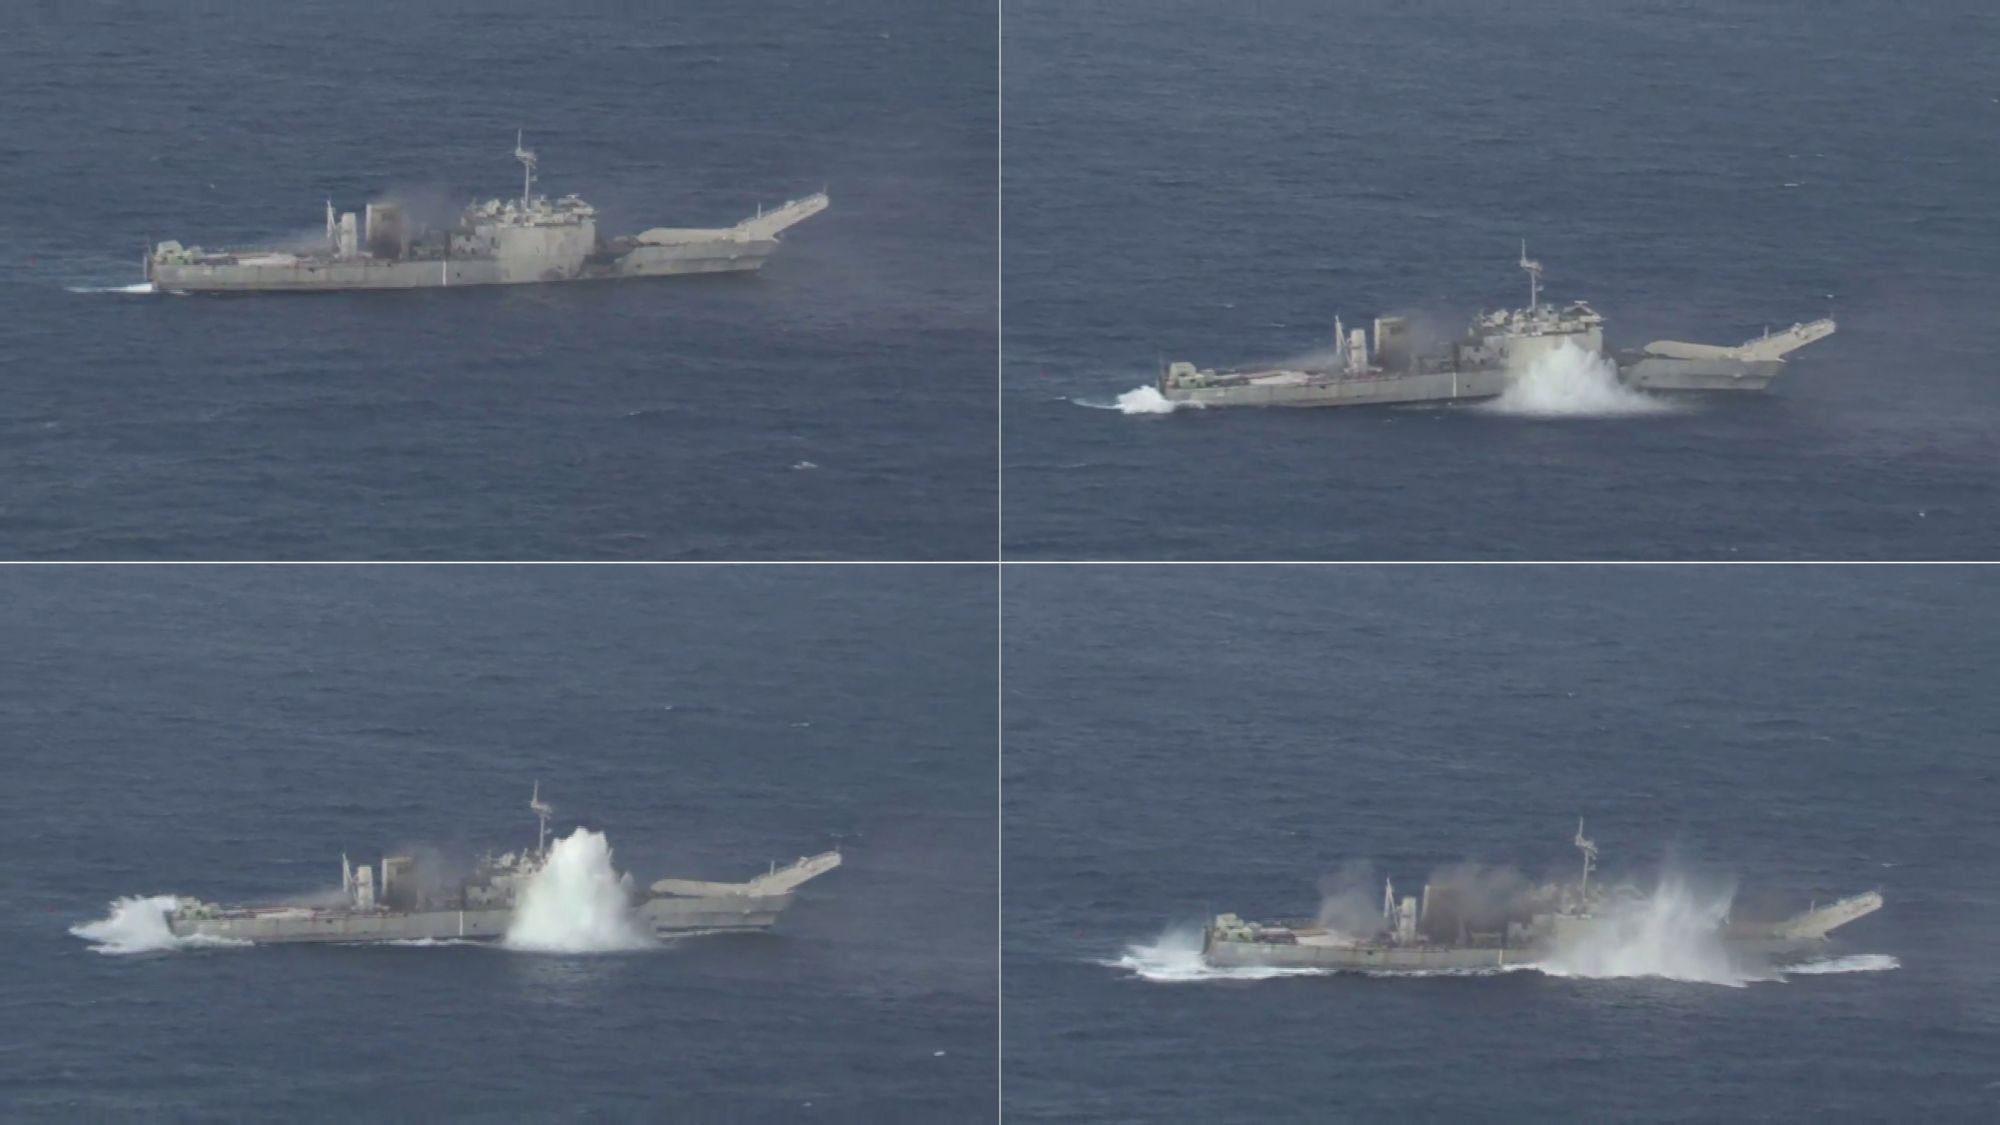 （视频连续截图）图为美国海军今日(NavalToday)网站报道的7月12日当天航拍的被“奥林匹亚”号攻击型核潜艇(USS Olympia SSN-717)发射的MK48重型鱼雷击中的“拉辛”号坦克登陆舰。(USS Racine LST-1191)。（拖拽本图可查看原图）